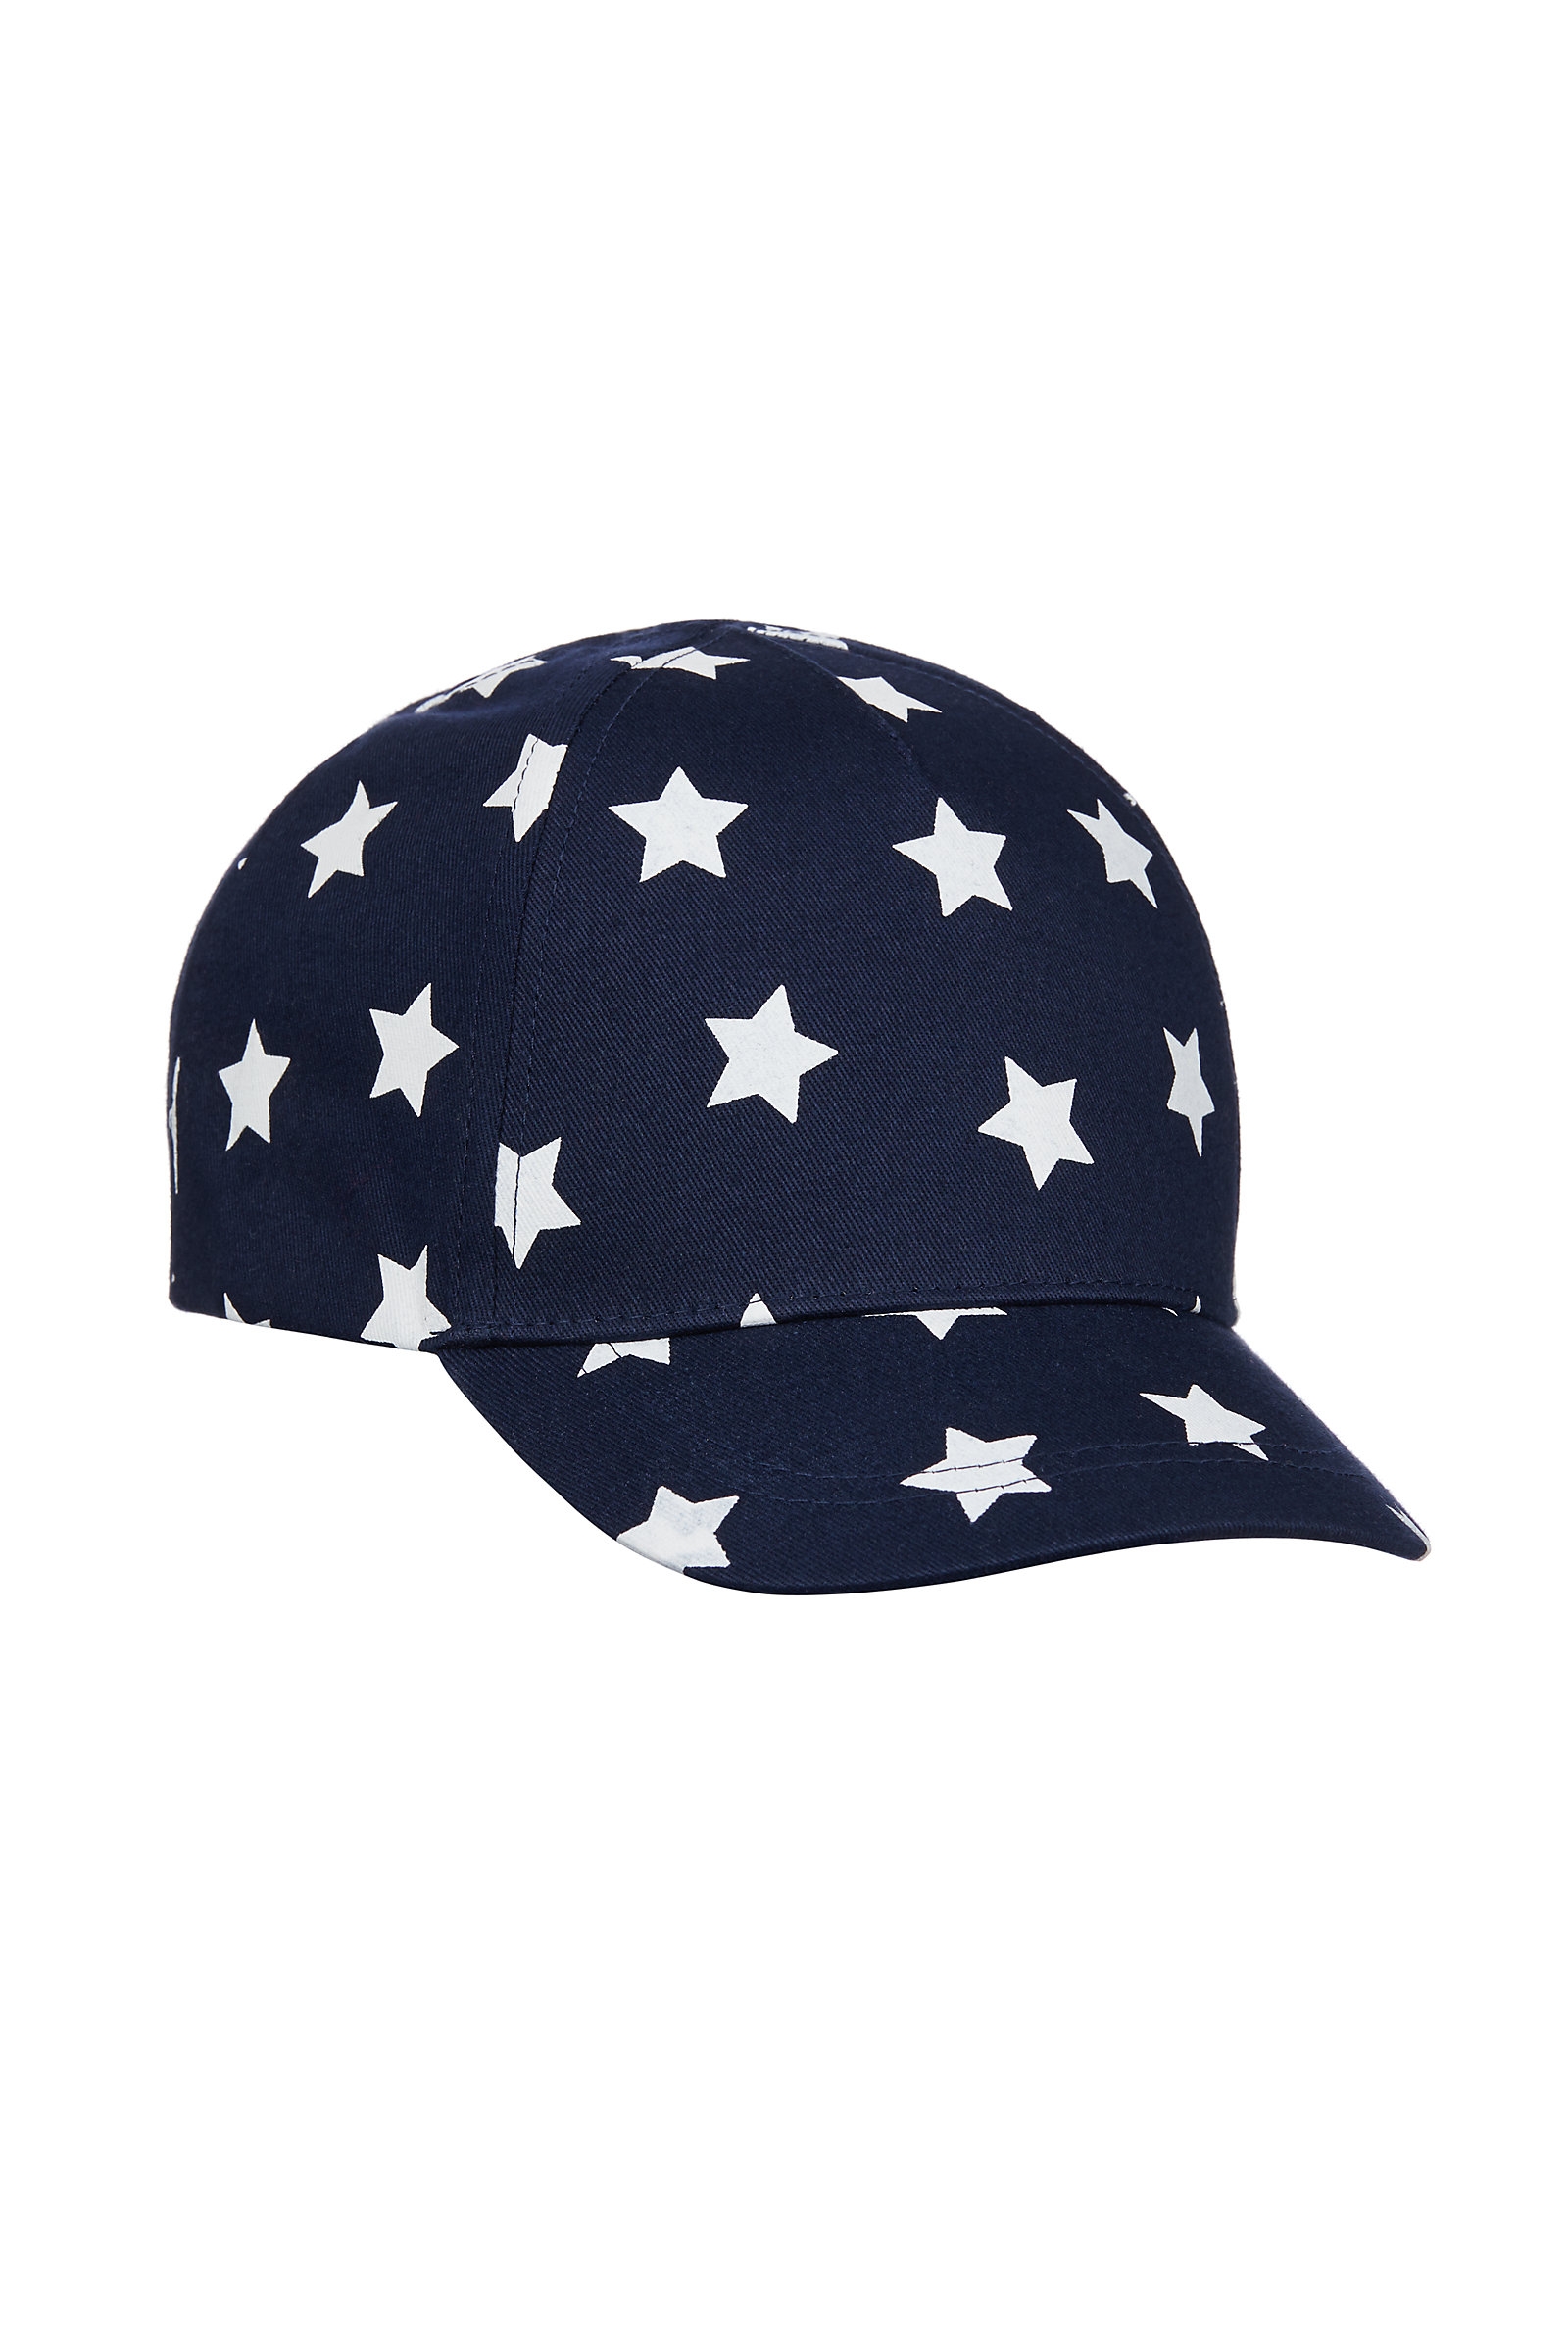 Boys Cap Star Print - Navy